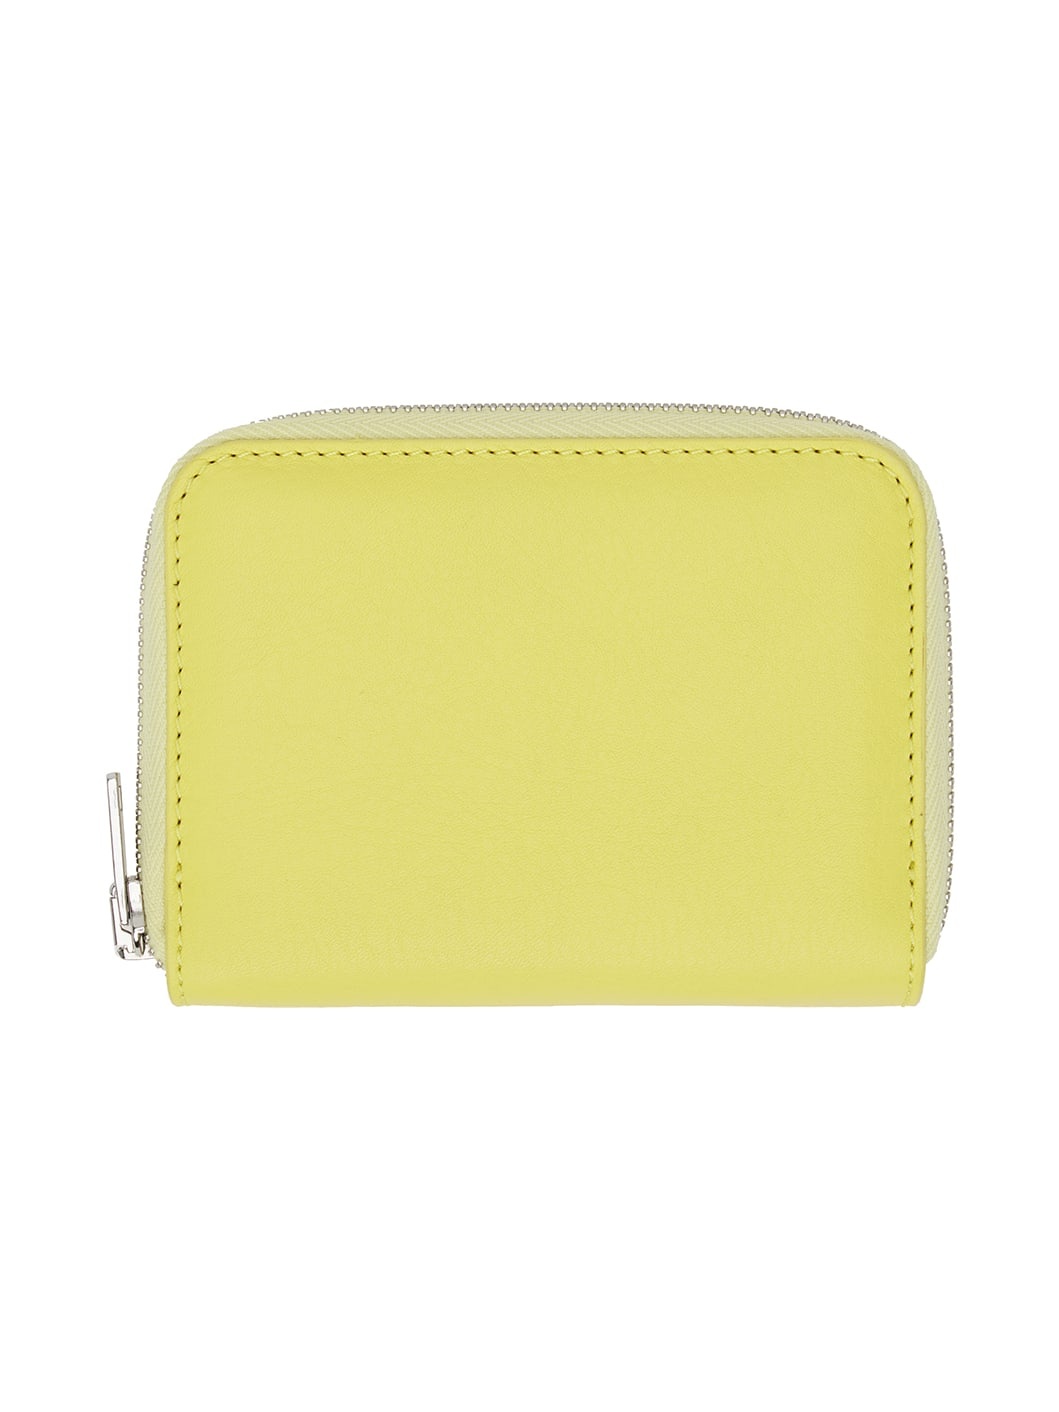 Yellow Cloud Zipped Wallet - 2